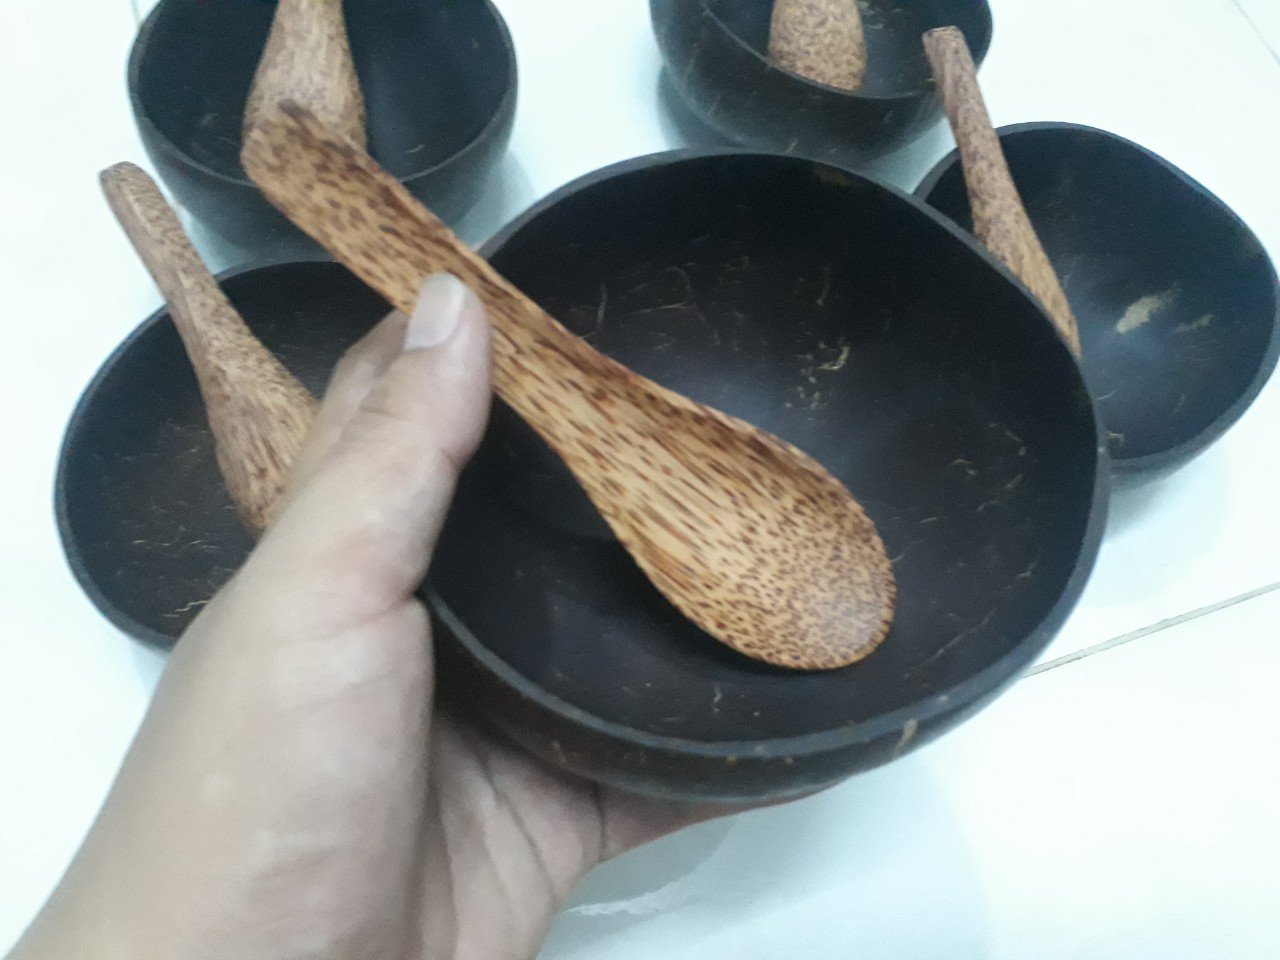 Bộ 5 bát gáo dừa muỗng gỗ dừa ăn cơm - Mỹ Nghệ Dừa Nam Trang